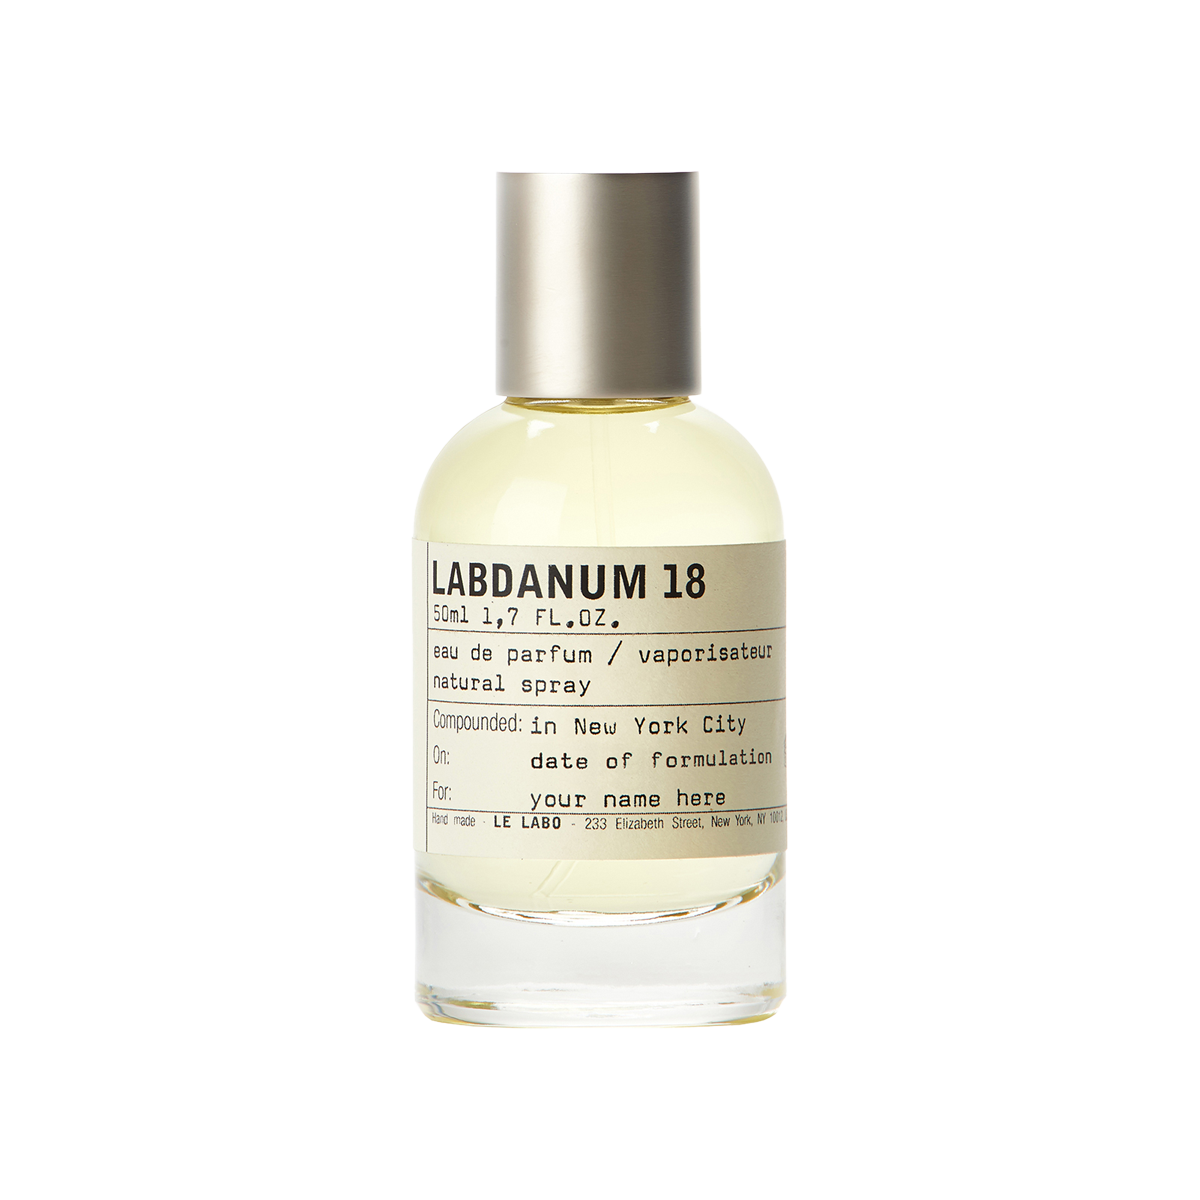 Le Labo fragrances - Labdanum 18 Eau de Parfum